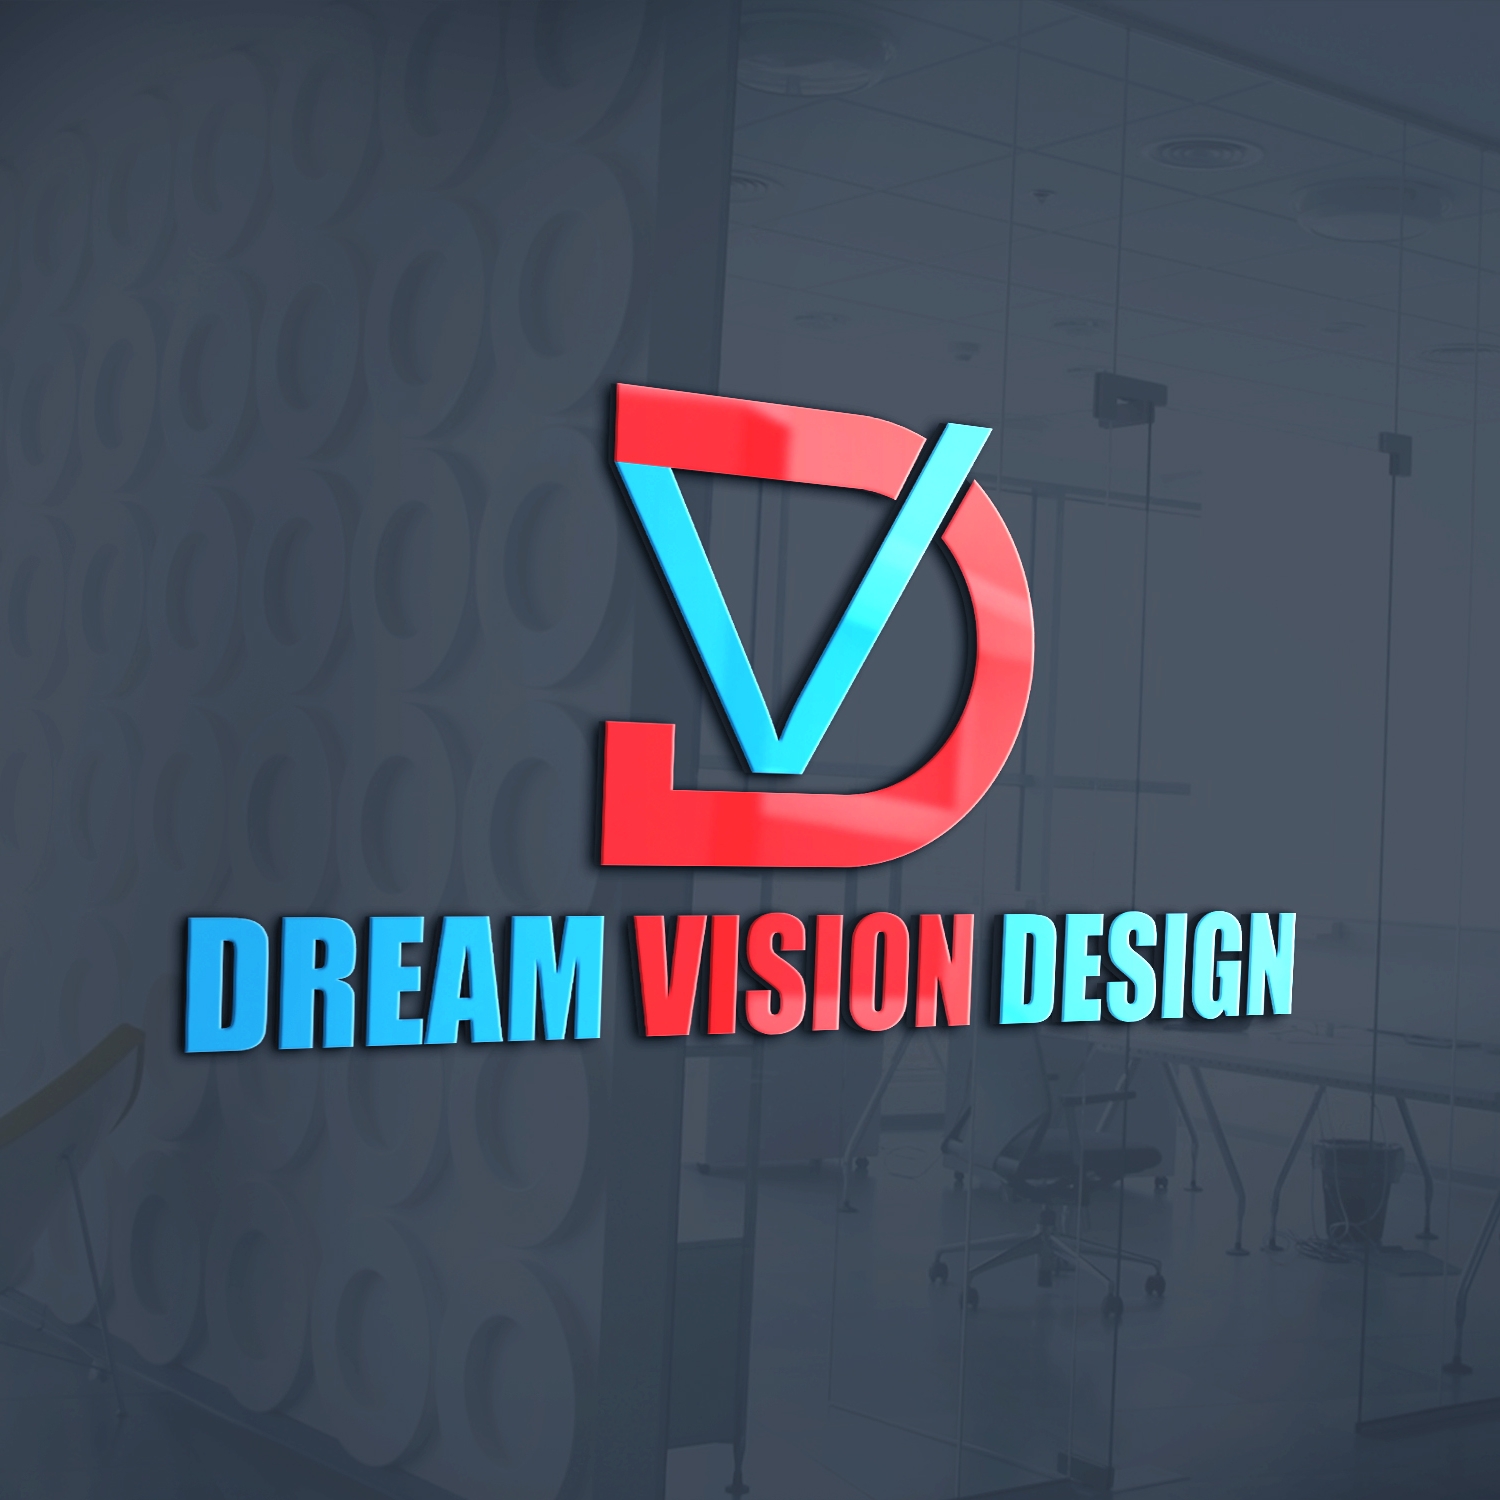 Dream Vision Design & Dream House Construction Logo